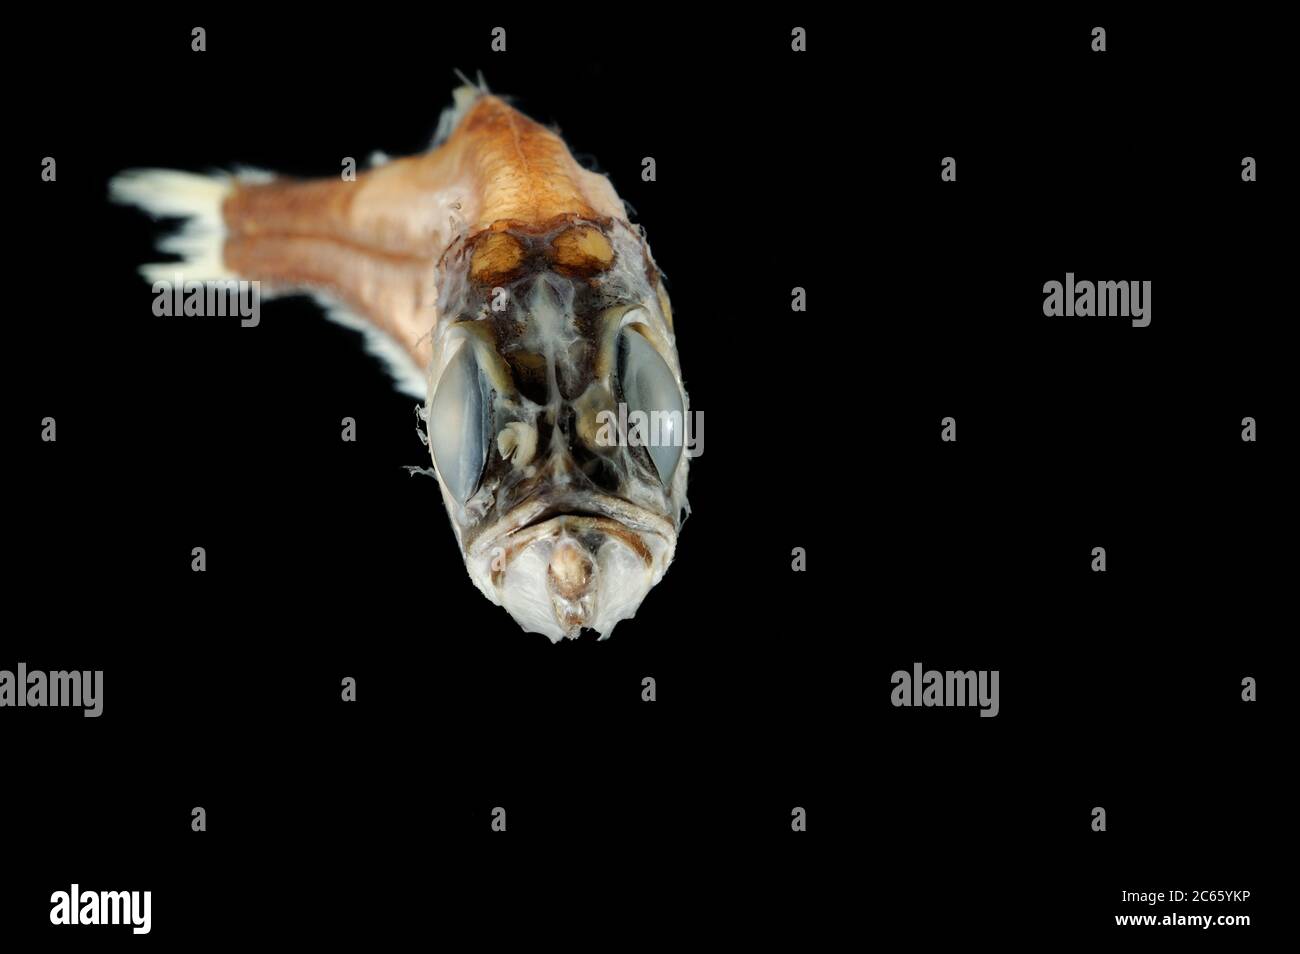 Cooper Lanternfish (Electrona antarctique) la photo a été prise en coopération avec l'Université du Musée zoologique de Hambourg Banque D'Images